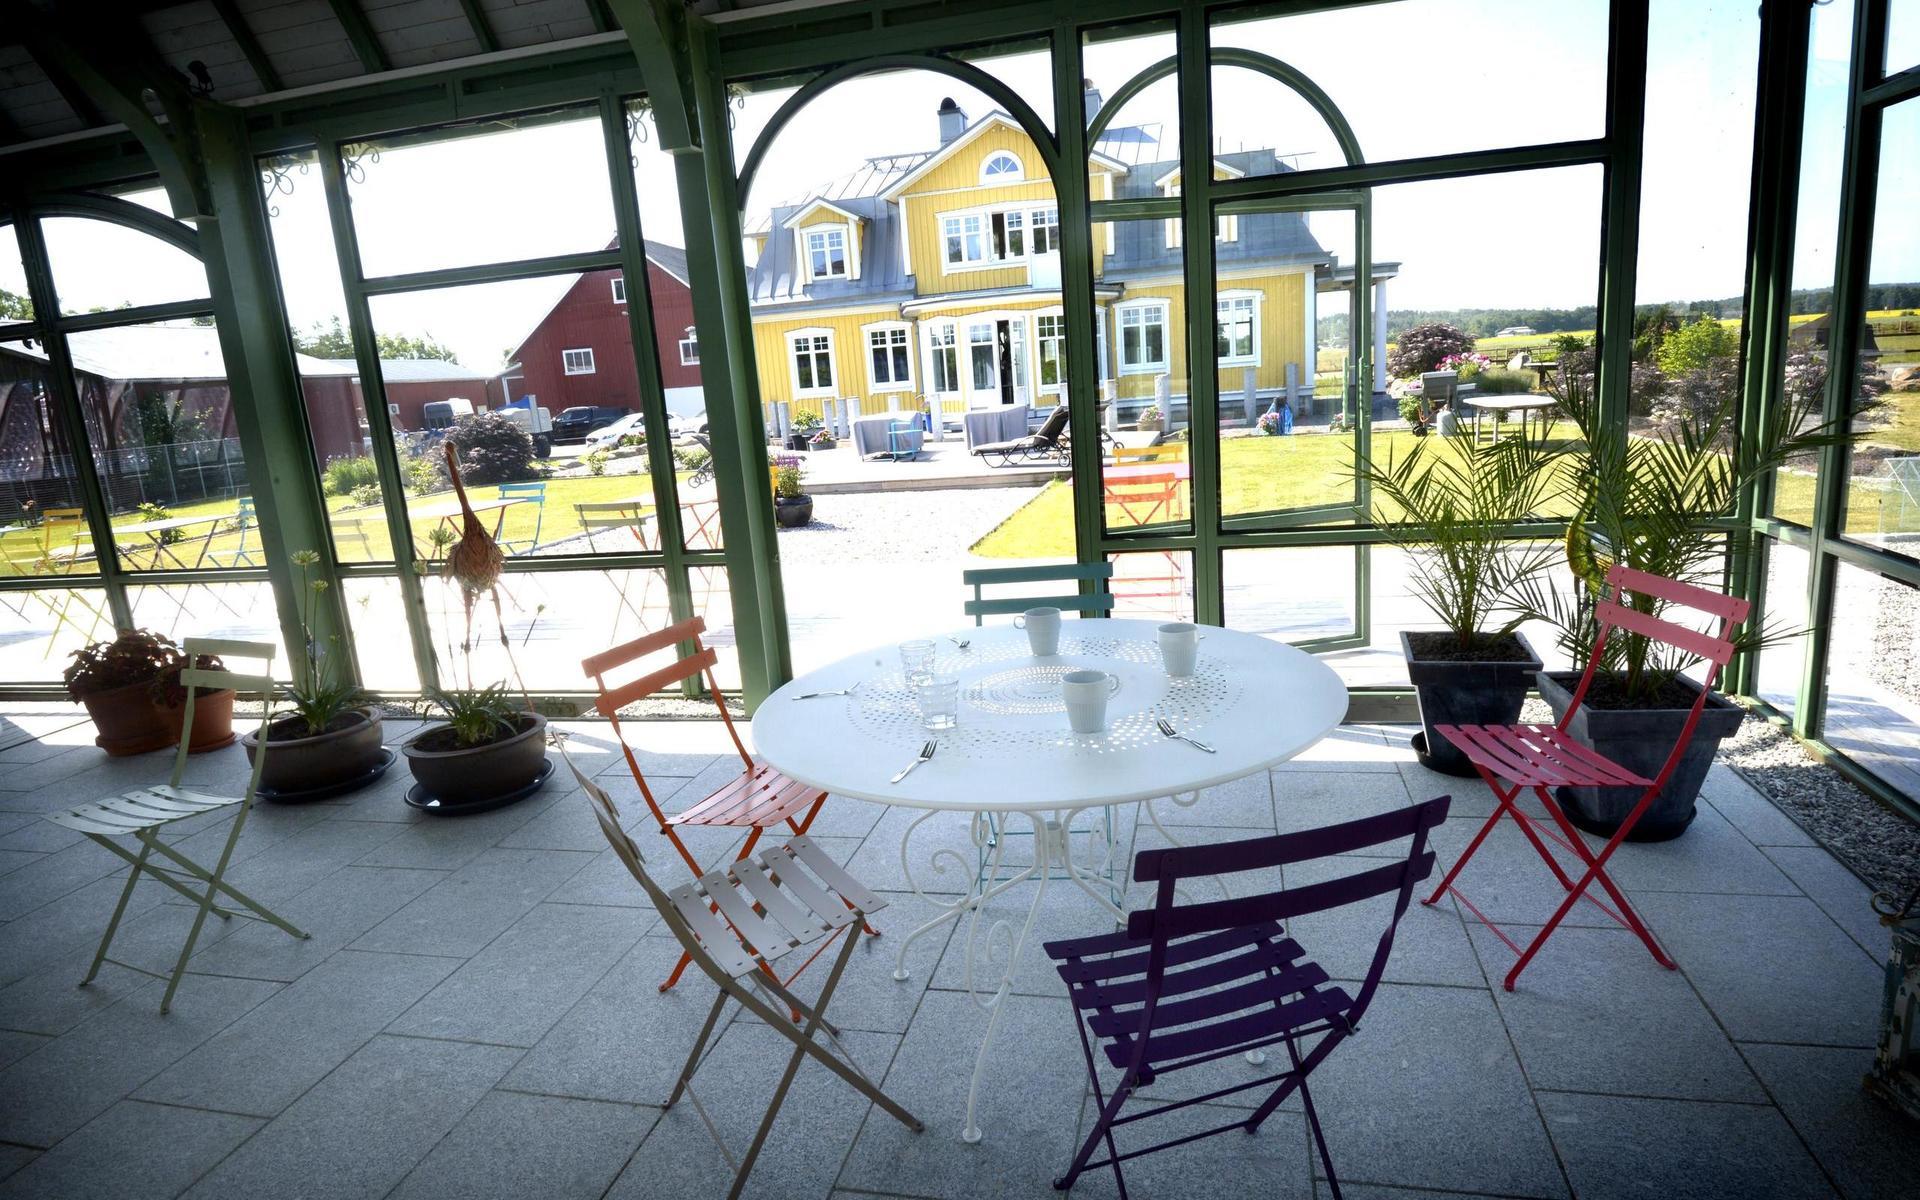 Orangeriet har sitt ursprung i Kina. Liknande orangerier finns på Strandbaden i Falkenberg och i Norrvikens trädgårdar utanför Båstad. 